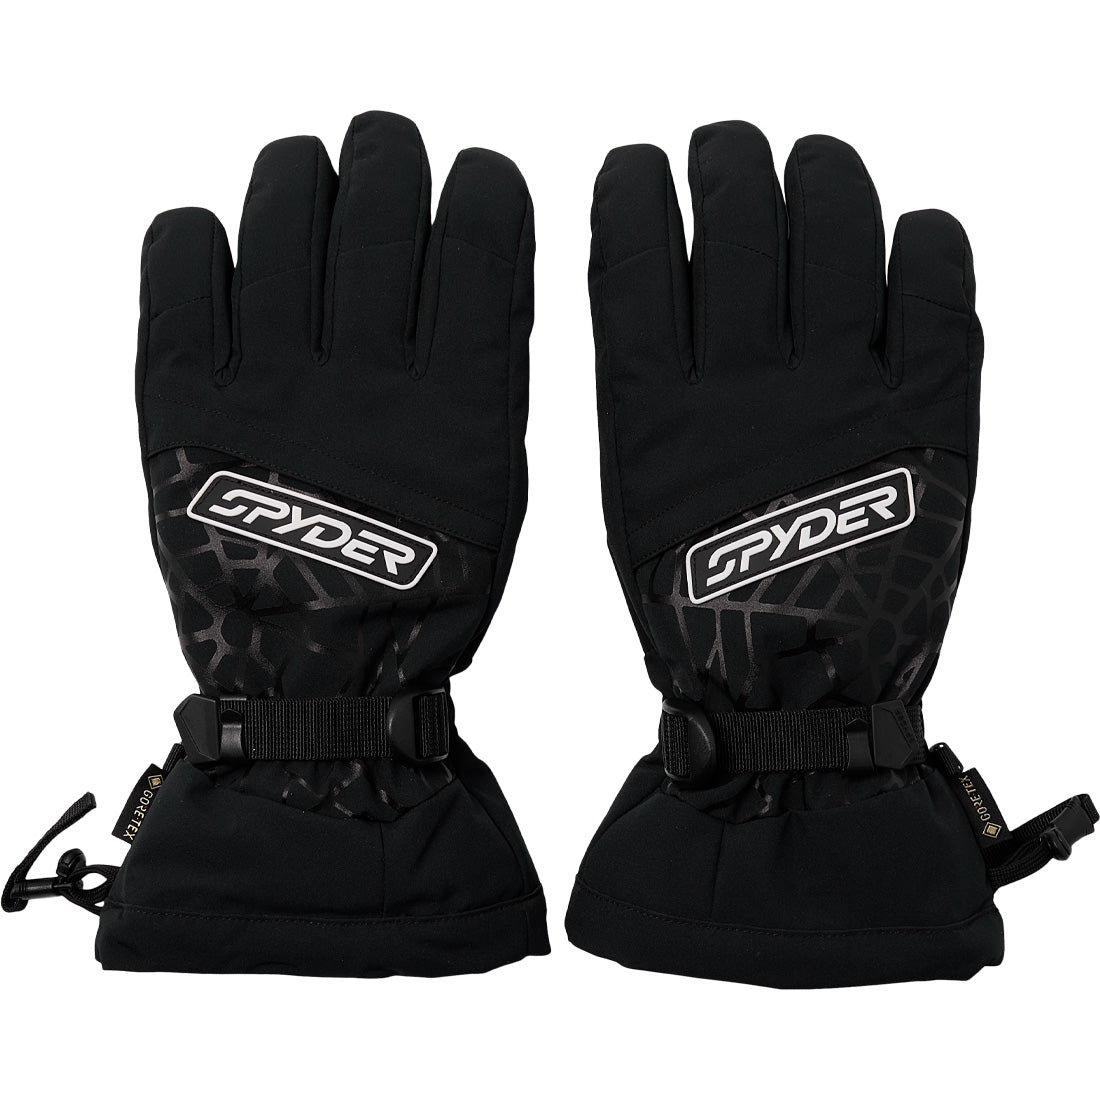 Spyder Overweb GTX Glove - Men's